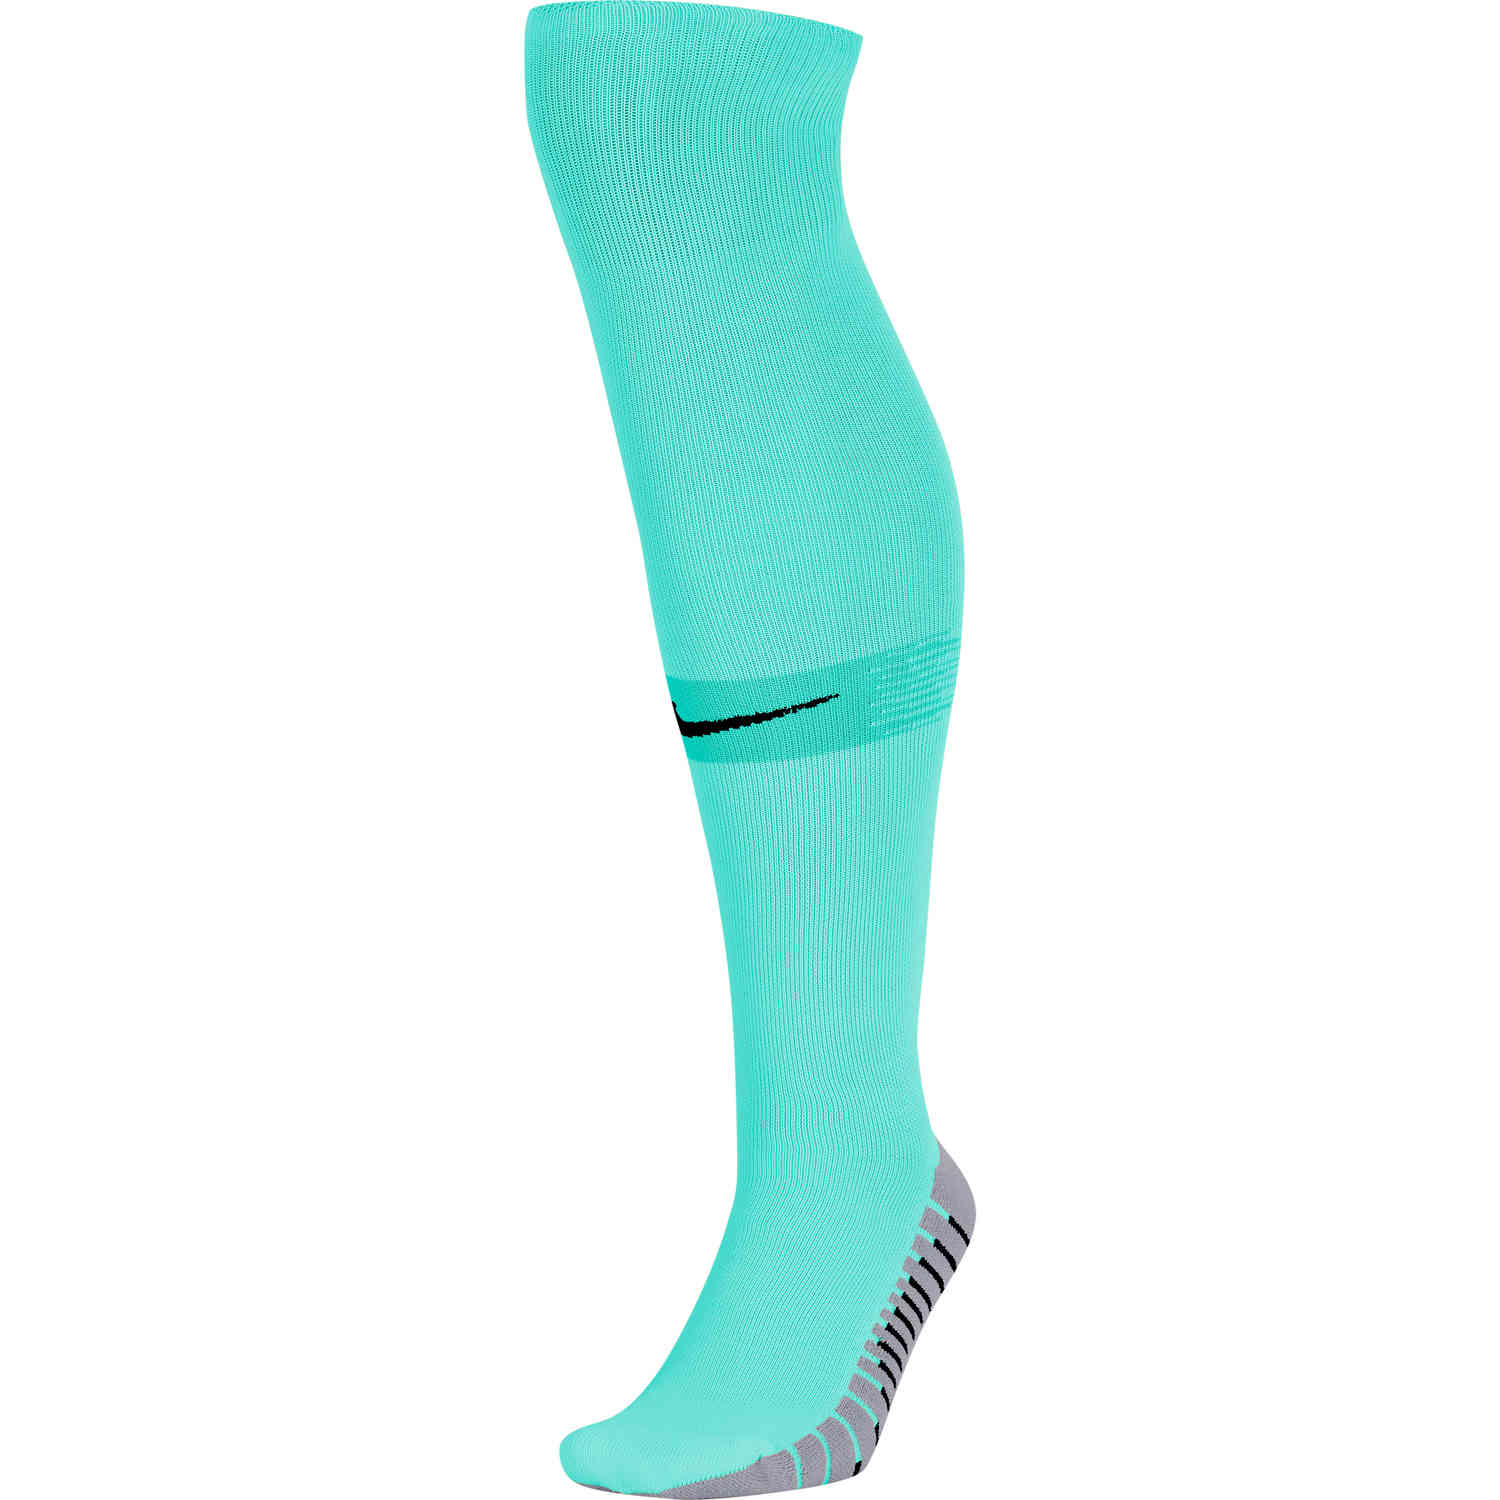 Nike Matchfit Soccer Socks - Hyper Tugquoise - SoccerPro